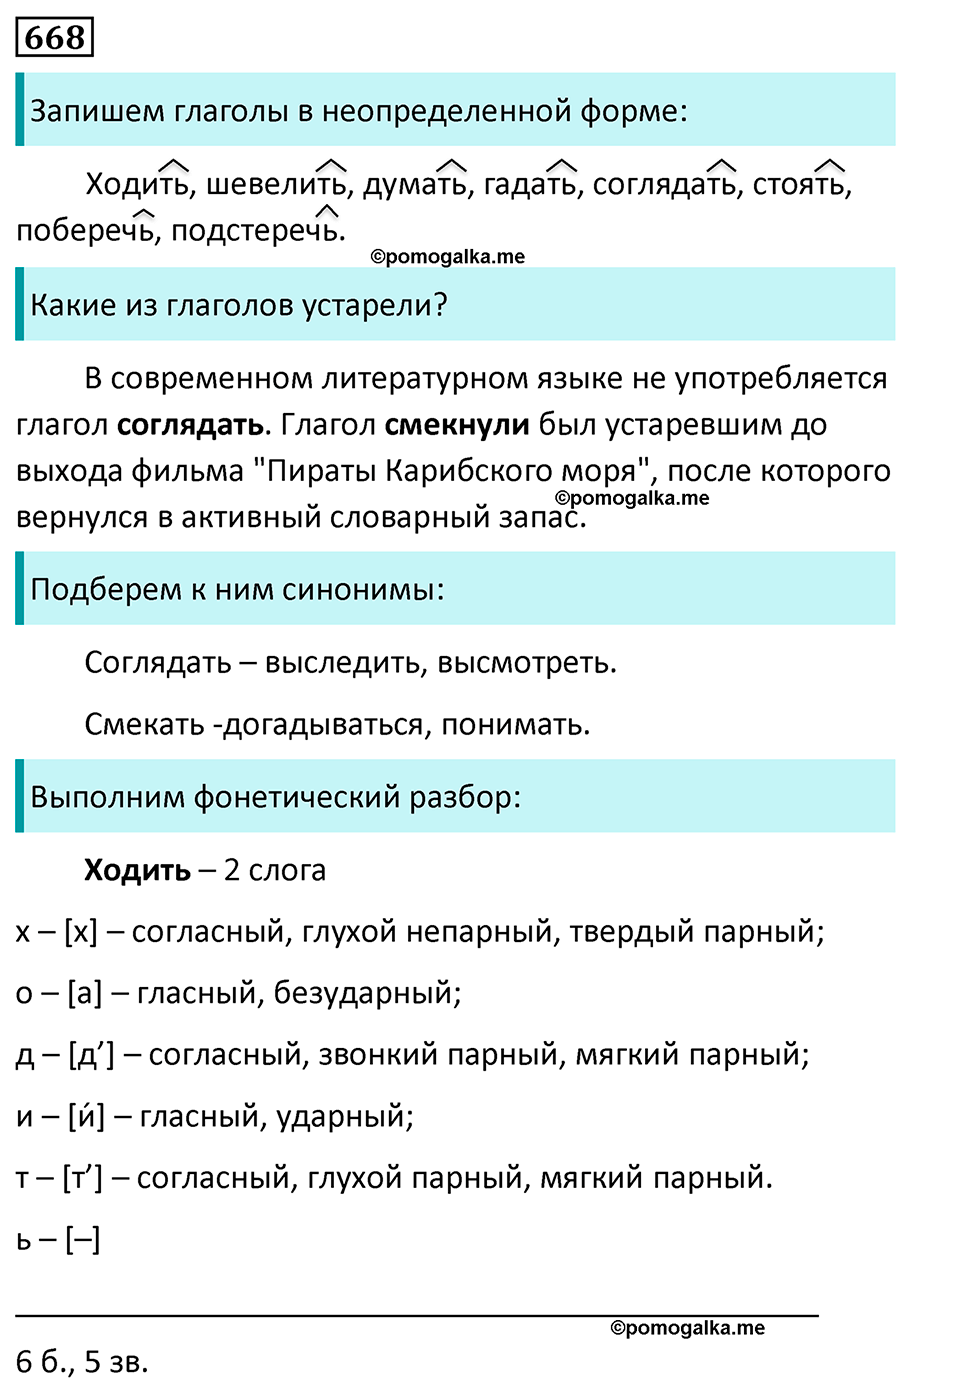 упражнение 668 русский язык 5 класс Ладыженская, Баранов, Тростенцова, Григорян 2020 год